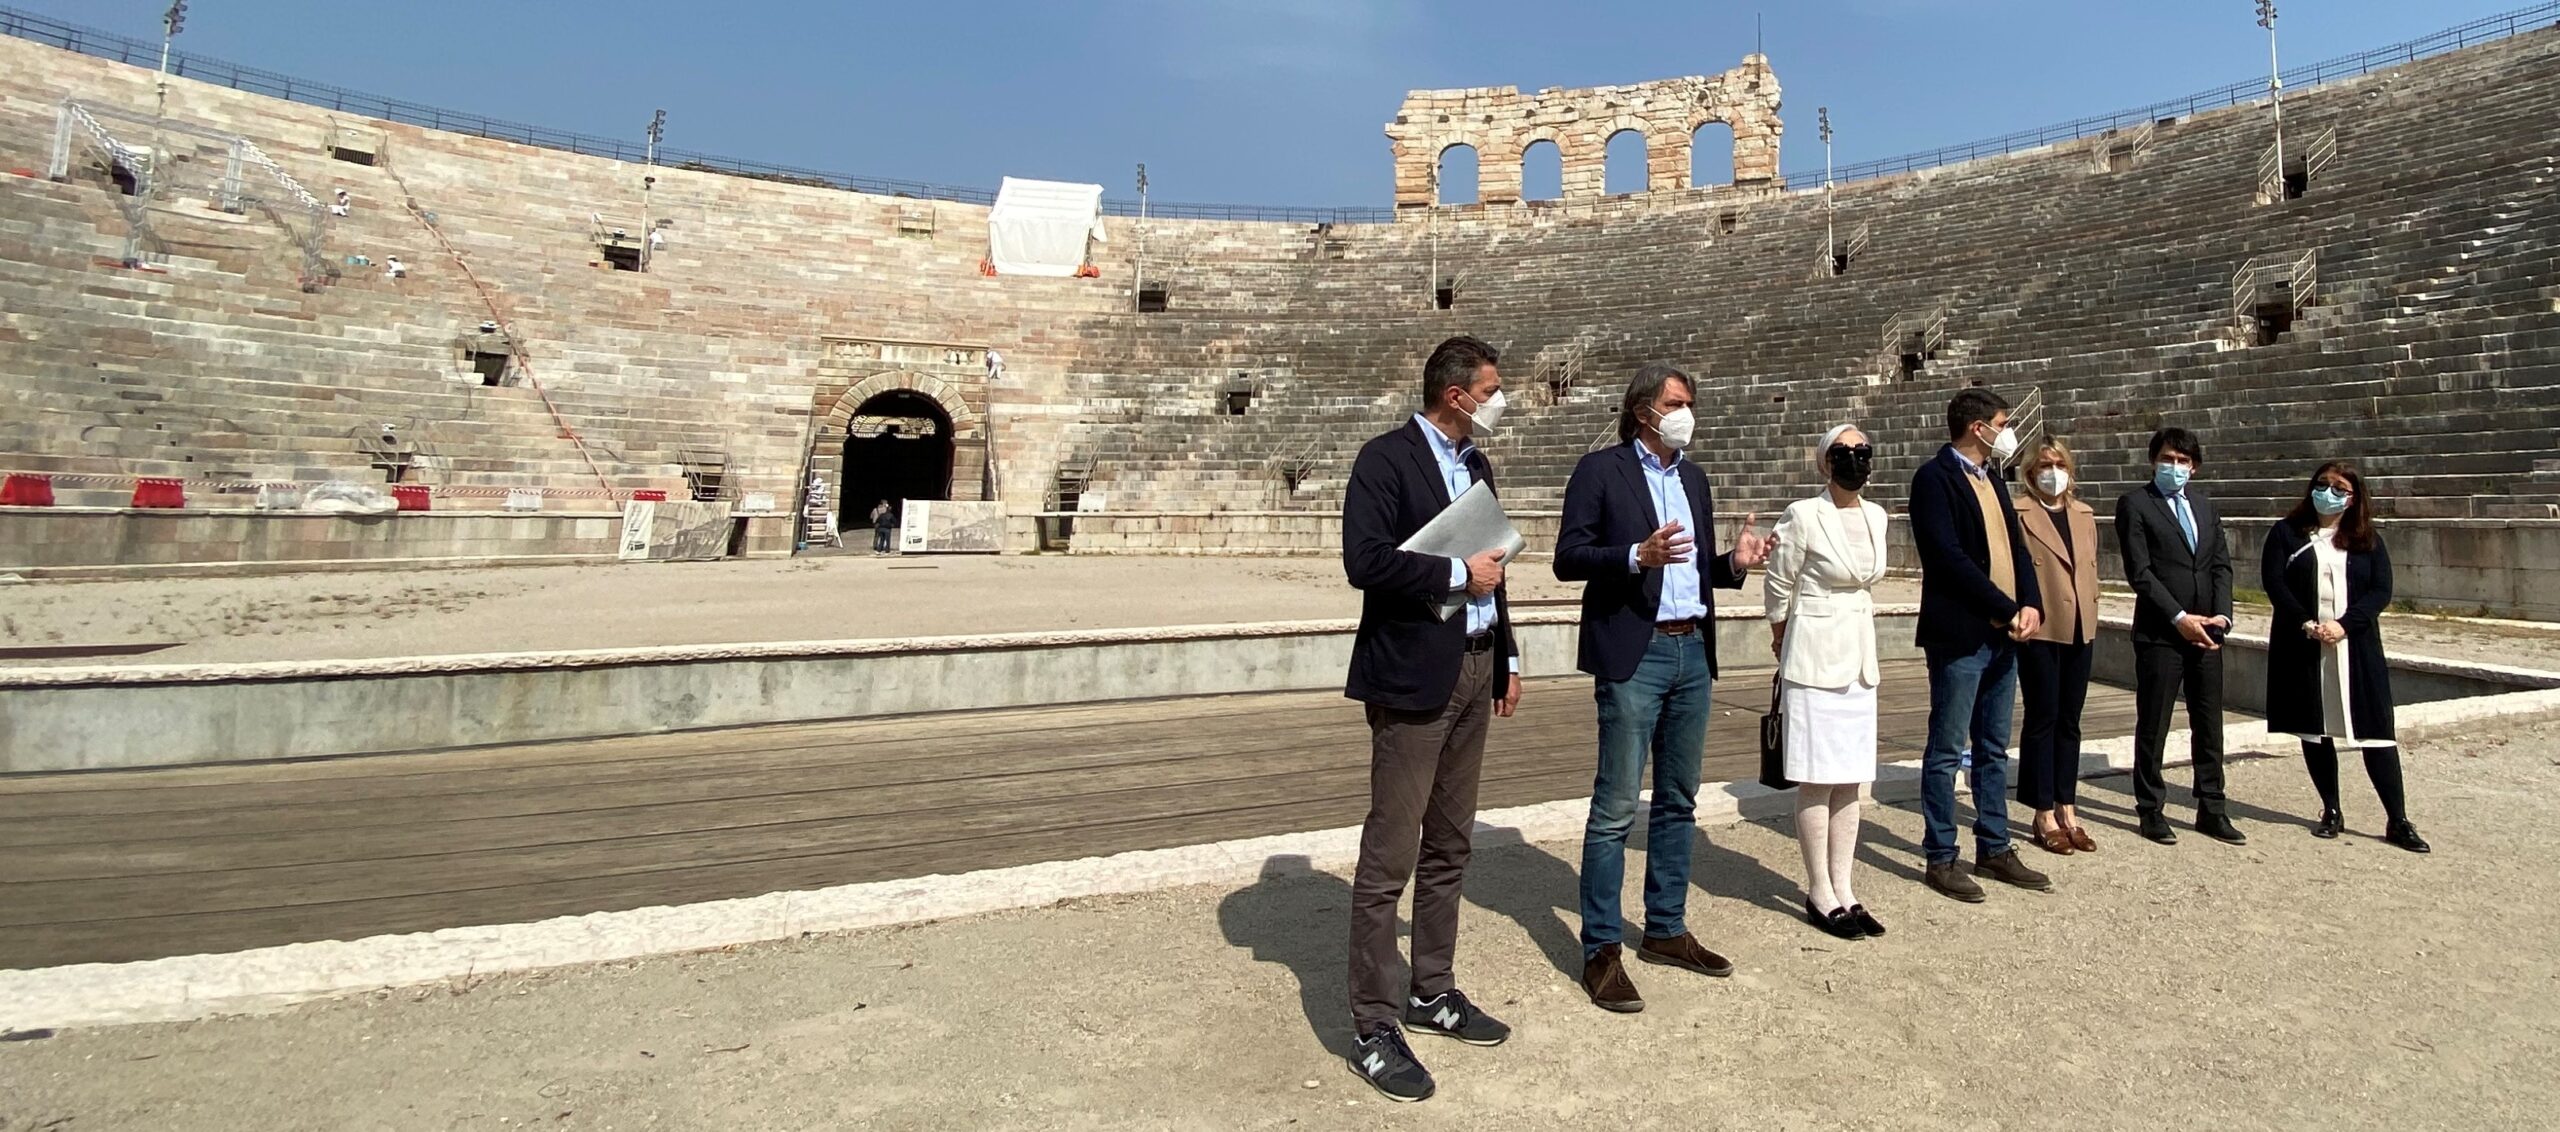 Arena di Verona, la manutenzione va avanti con altri 8 milioni dall’art bonus